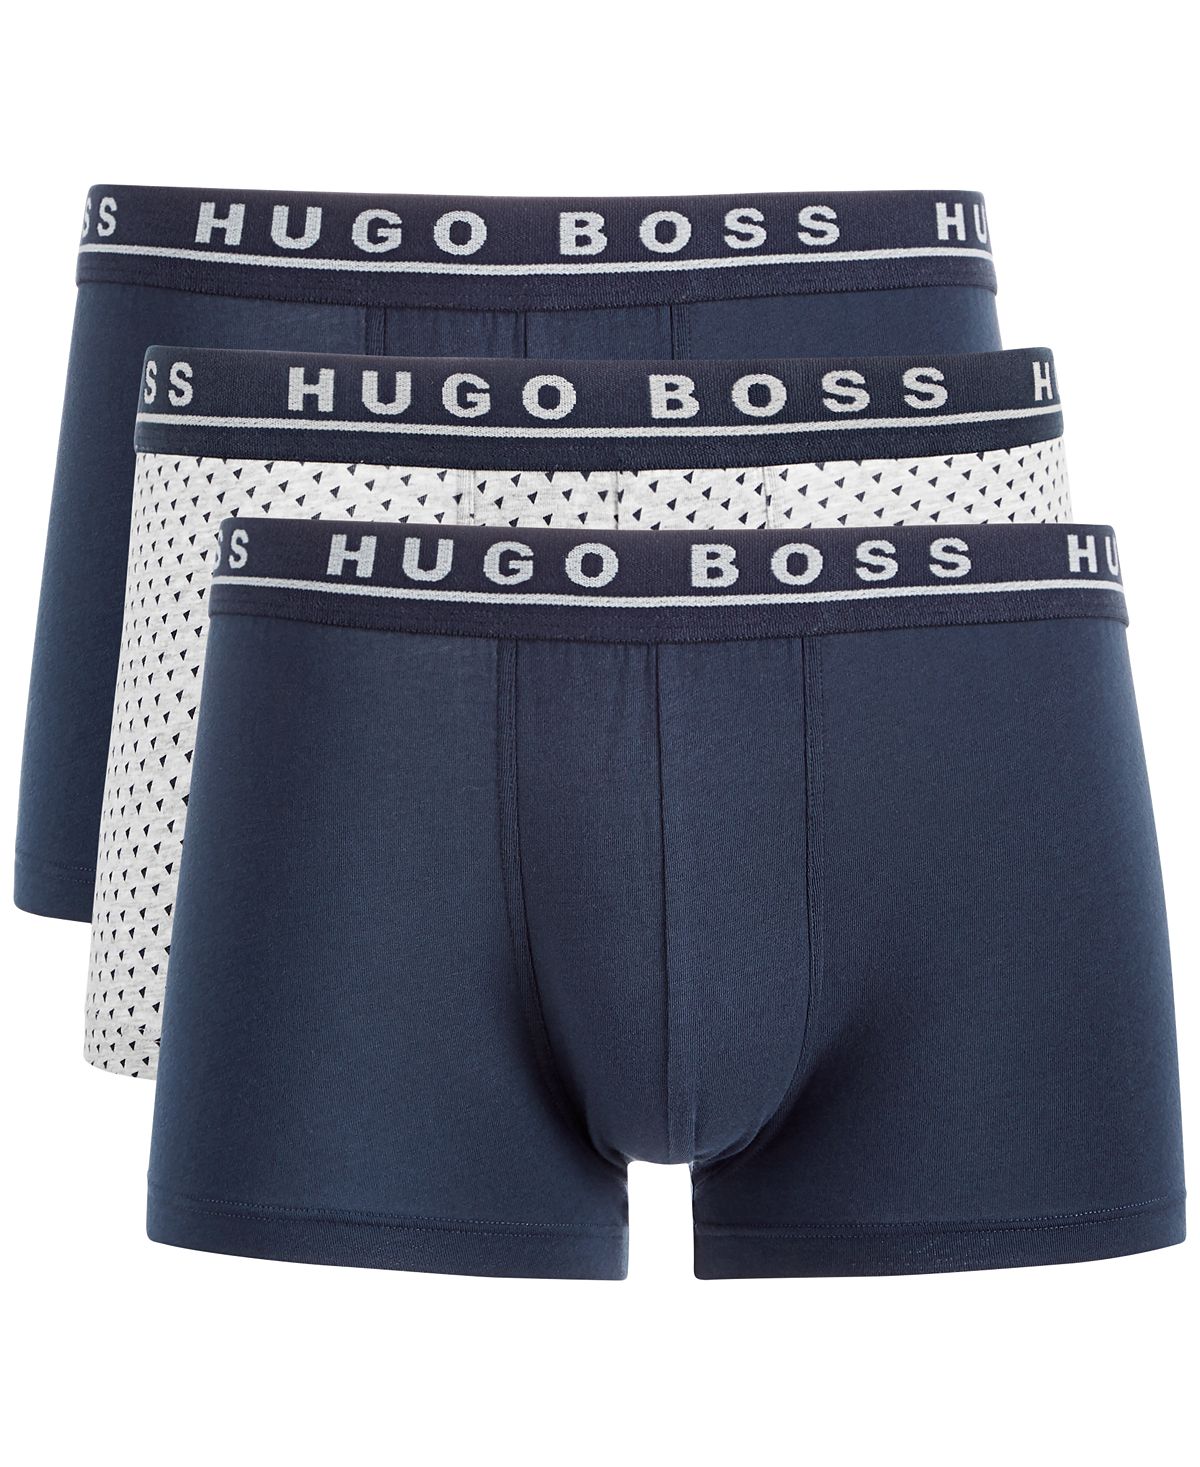 Hugo Boss Boss 3-pk. Stretch Trunks Multi